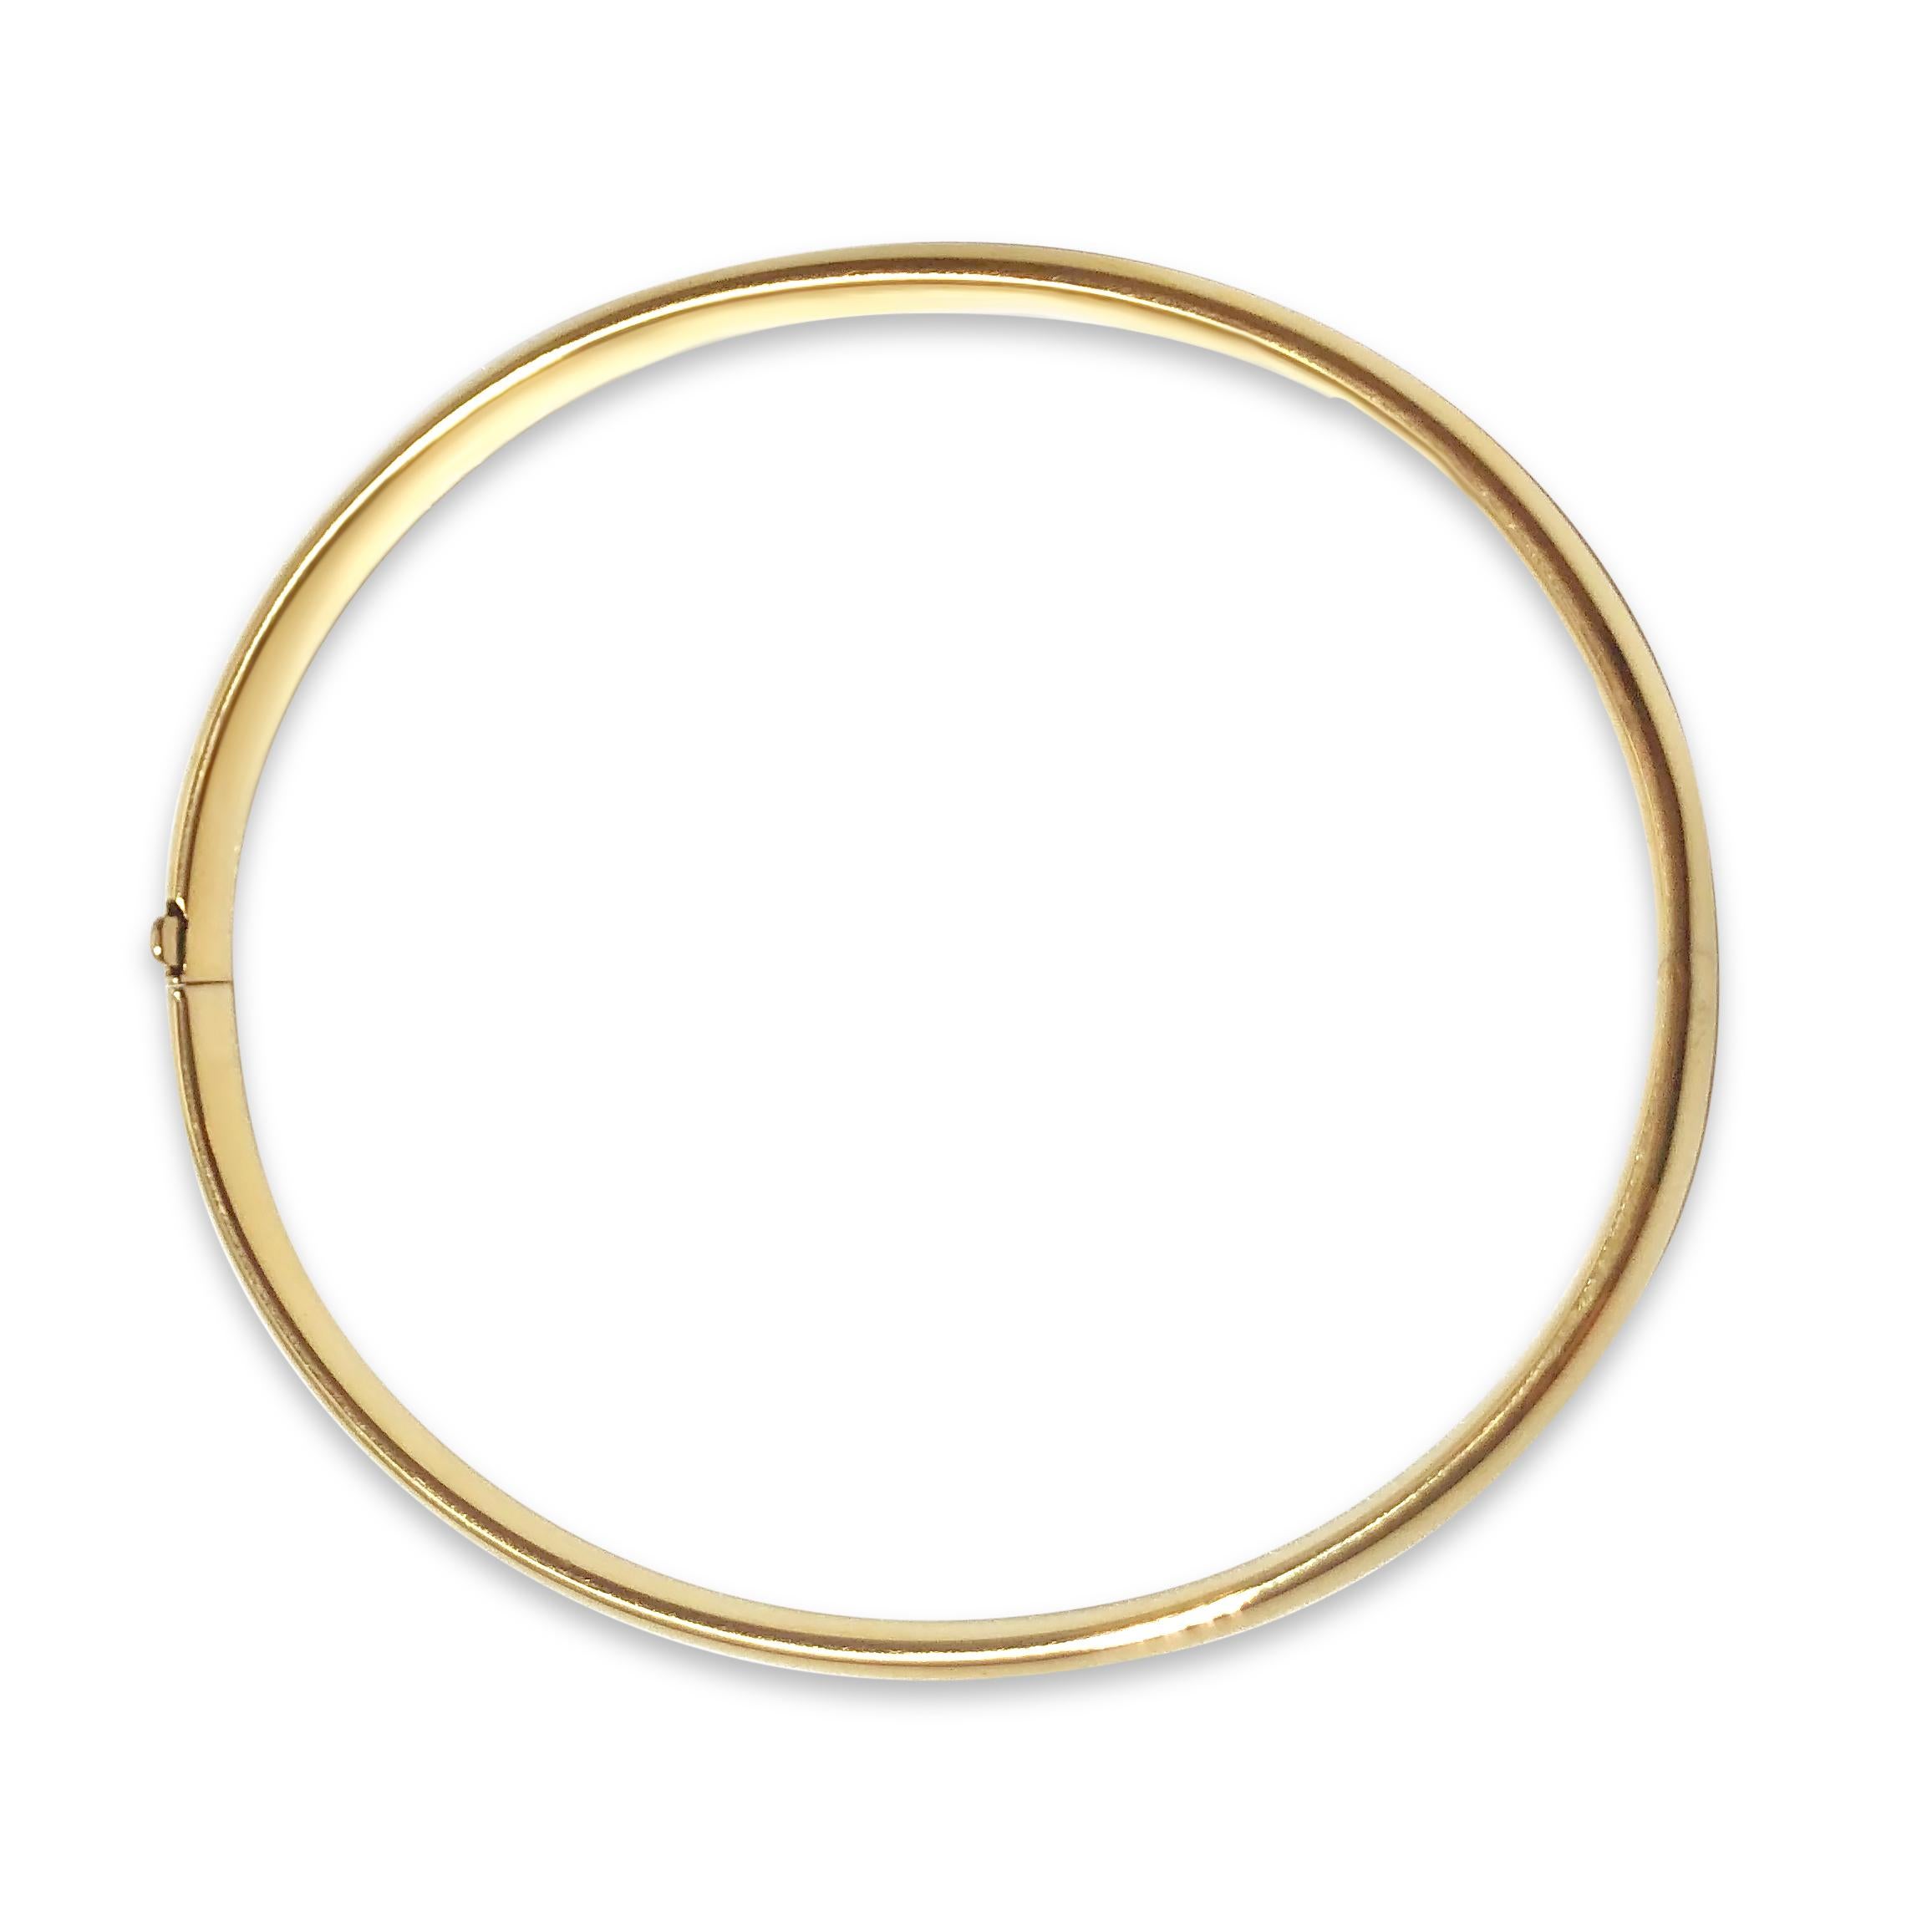 Ein ganz klassischer Goldarmreif. Unser ovales Armband 'Dome Bright' aus 18 Karat Gelbgold ist 3/16 Zoll breit und wird mit einem Schnappverschluss und einem Scharnier sicher geschlossen.

Spezifikationen:
- Die Form: Oval
- Abmessung: 6 5/8